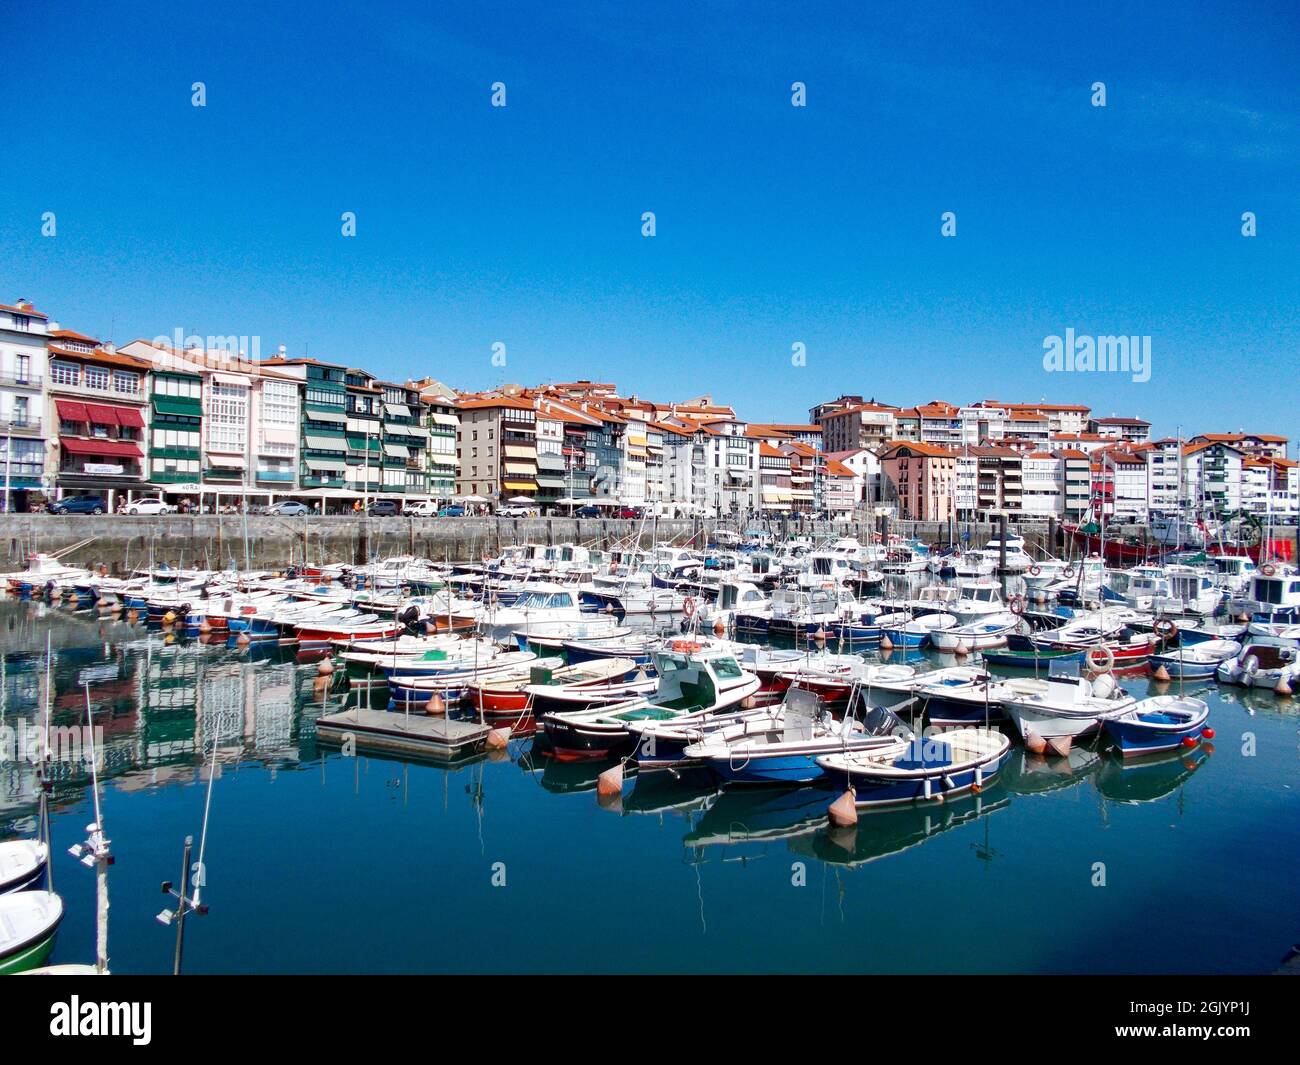 Hafen und Strand der Gemeinde Lekeitio-Lequeitio, im Baskenland, nördlich von Spanien. Das Hotel liegt direkt am Kantabrischen Meer. Europa. Stockfoto